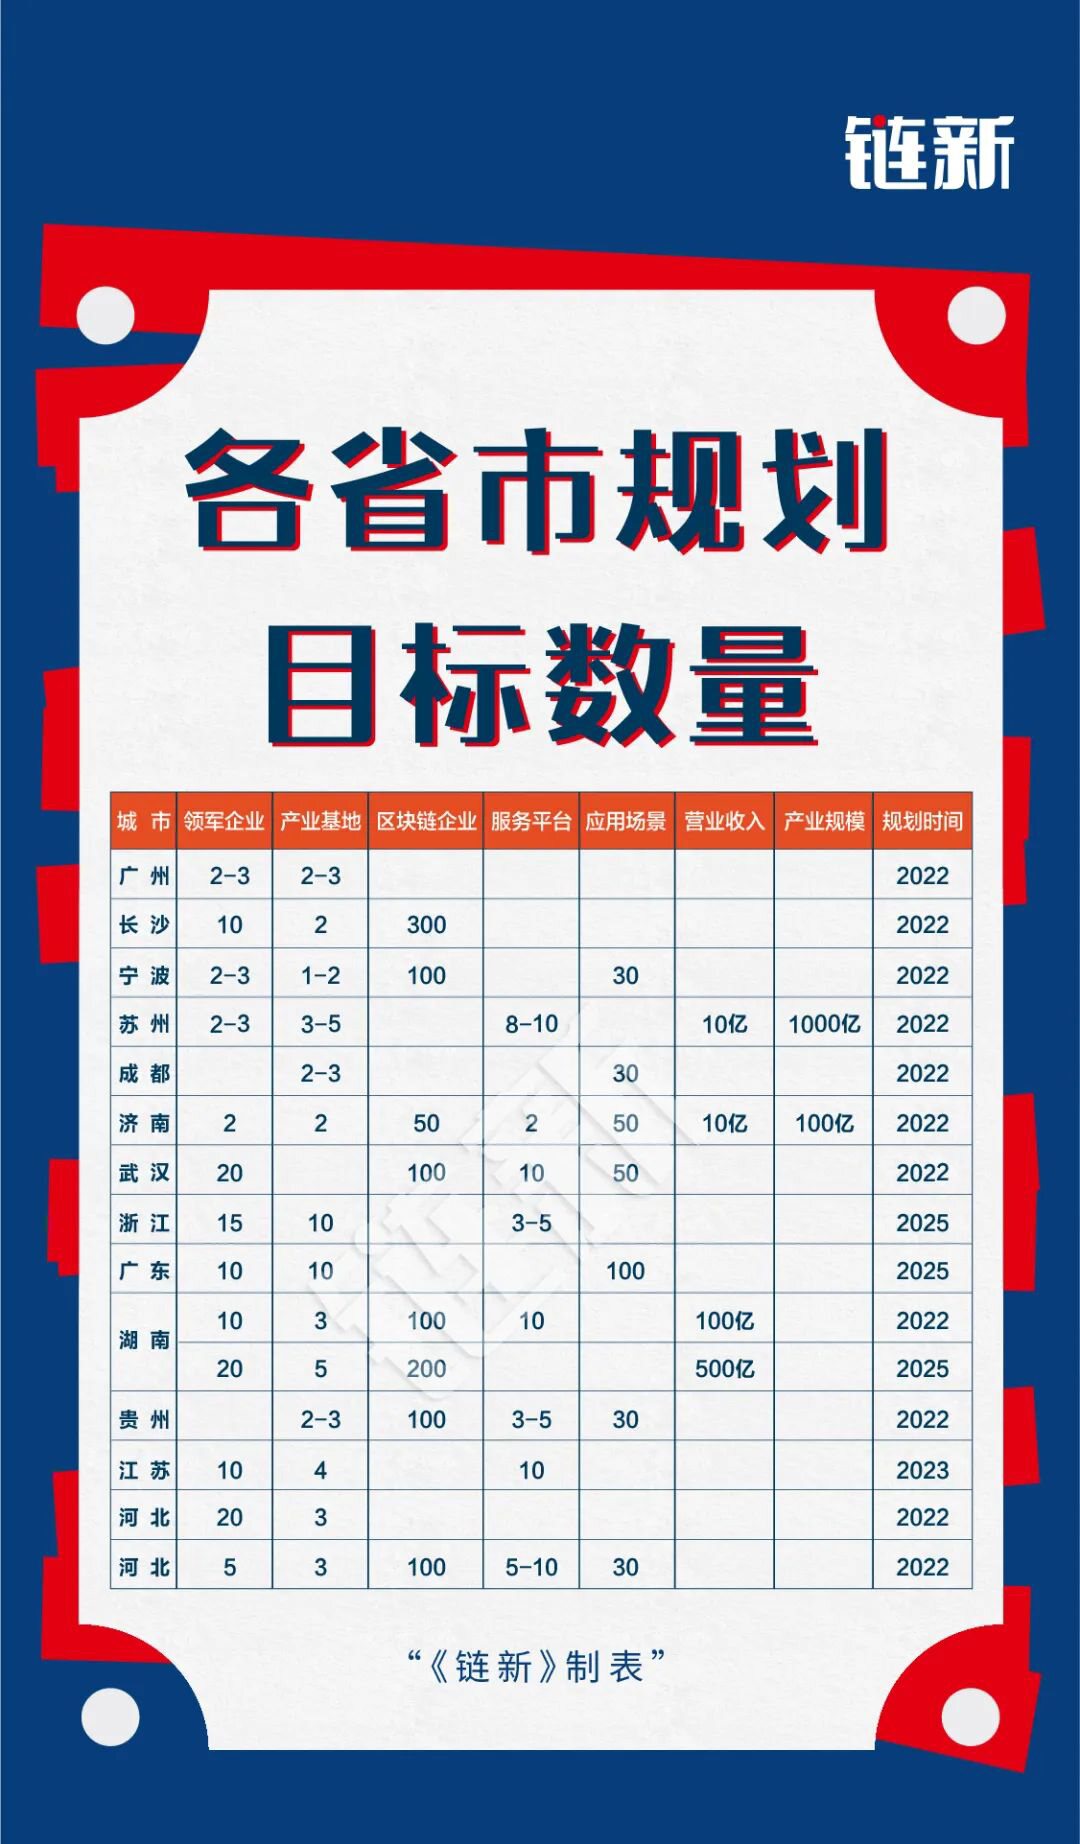 33省市出台区块链专项政策，上海出户口、南京出300万补贴抢人才